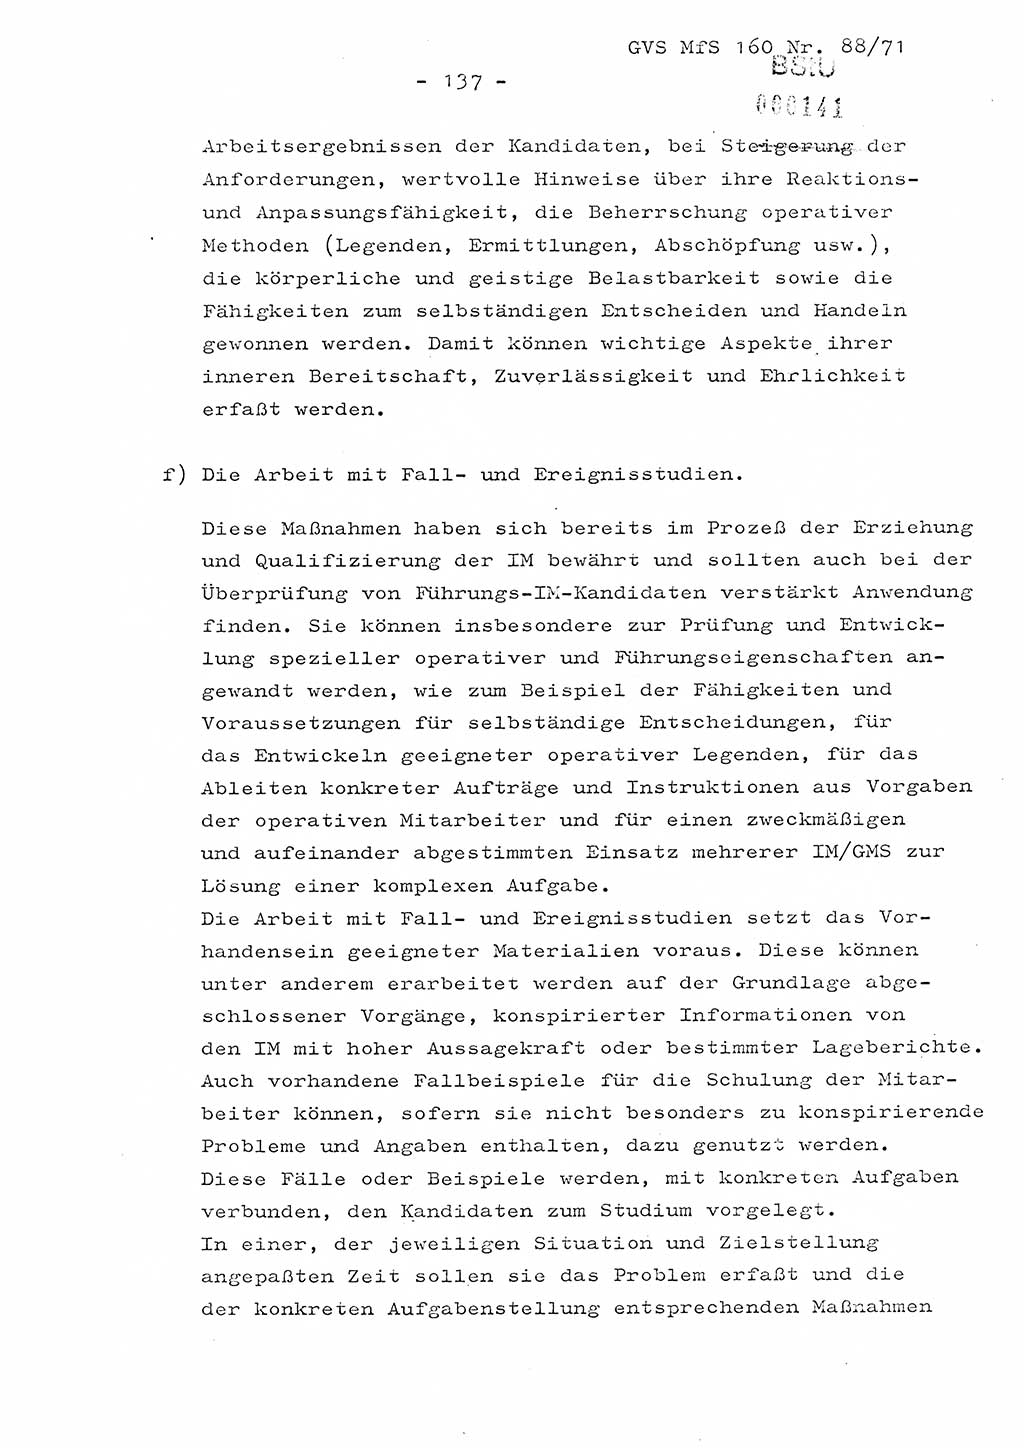 Dissertation Oberstleutnant Josef Schwarz (BV Schwerin), Major Fritz Amm (JHS), Hauptmann Peter Gräßler (JHS), Ministerium für Staatssicherheit (MfS) [Deutsche Demokratische Republik (DDR)], Juristische Hochschule (JHS), Geheime Verschlußsache (GVS) 160-88/71, Potsdam 1972, Seite 137 (Diss. MfS DDR JHS GVS 160-88/71 1972, S. 137)